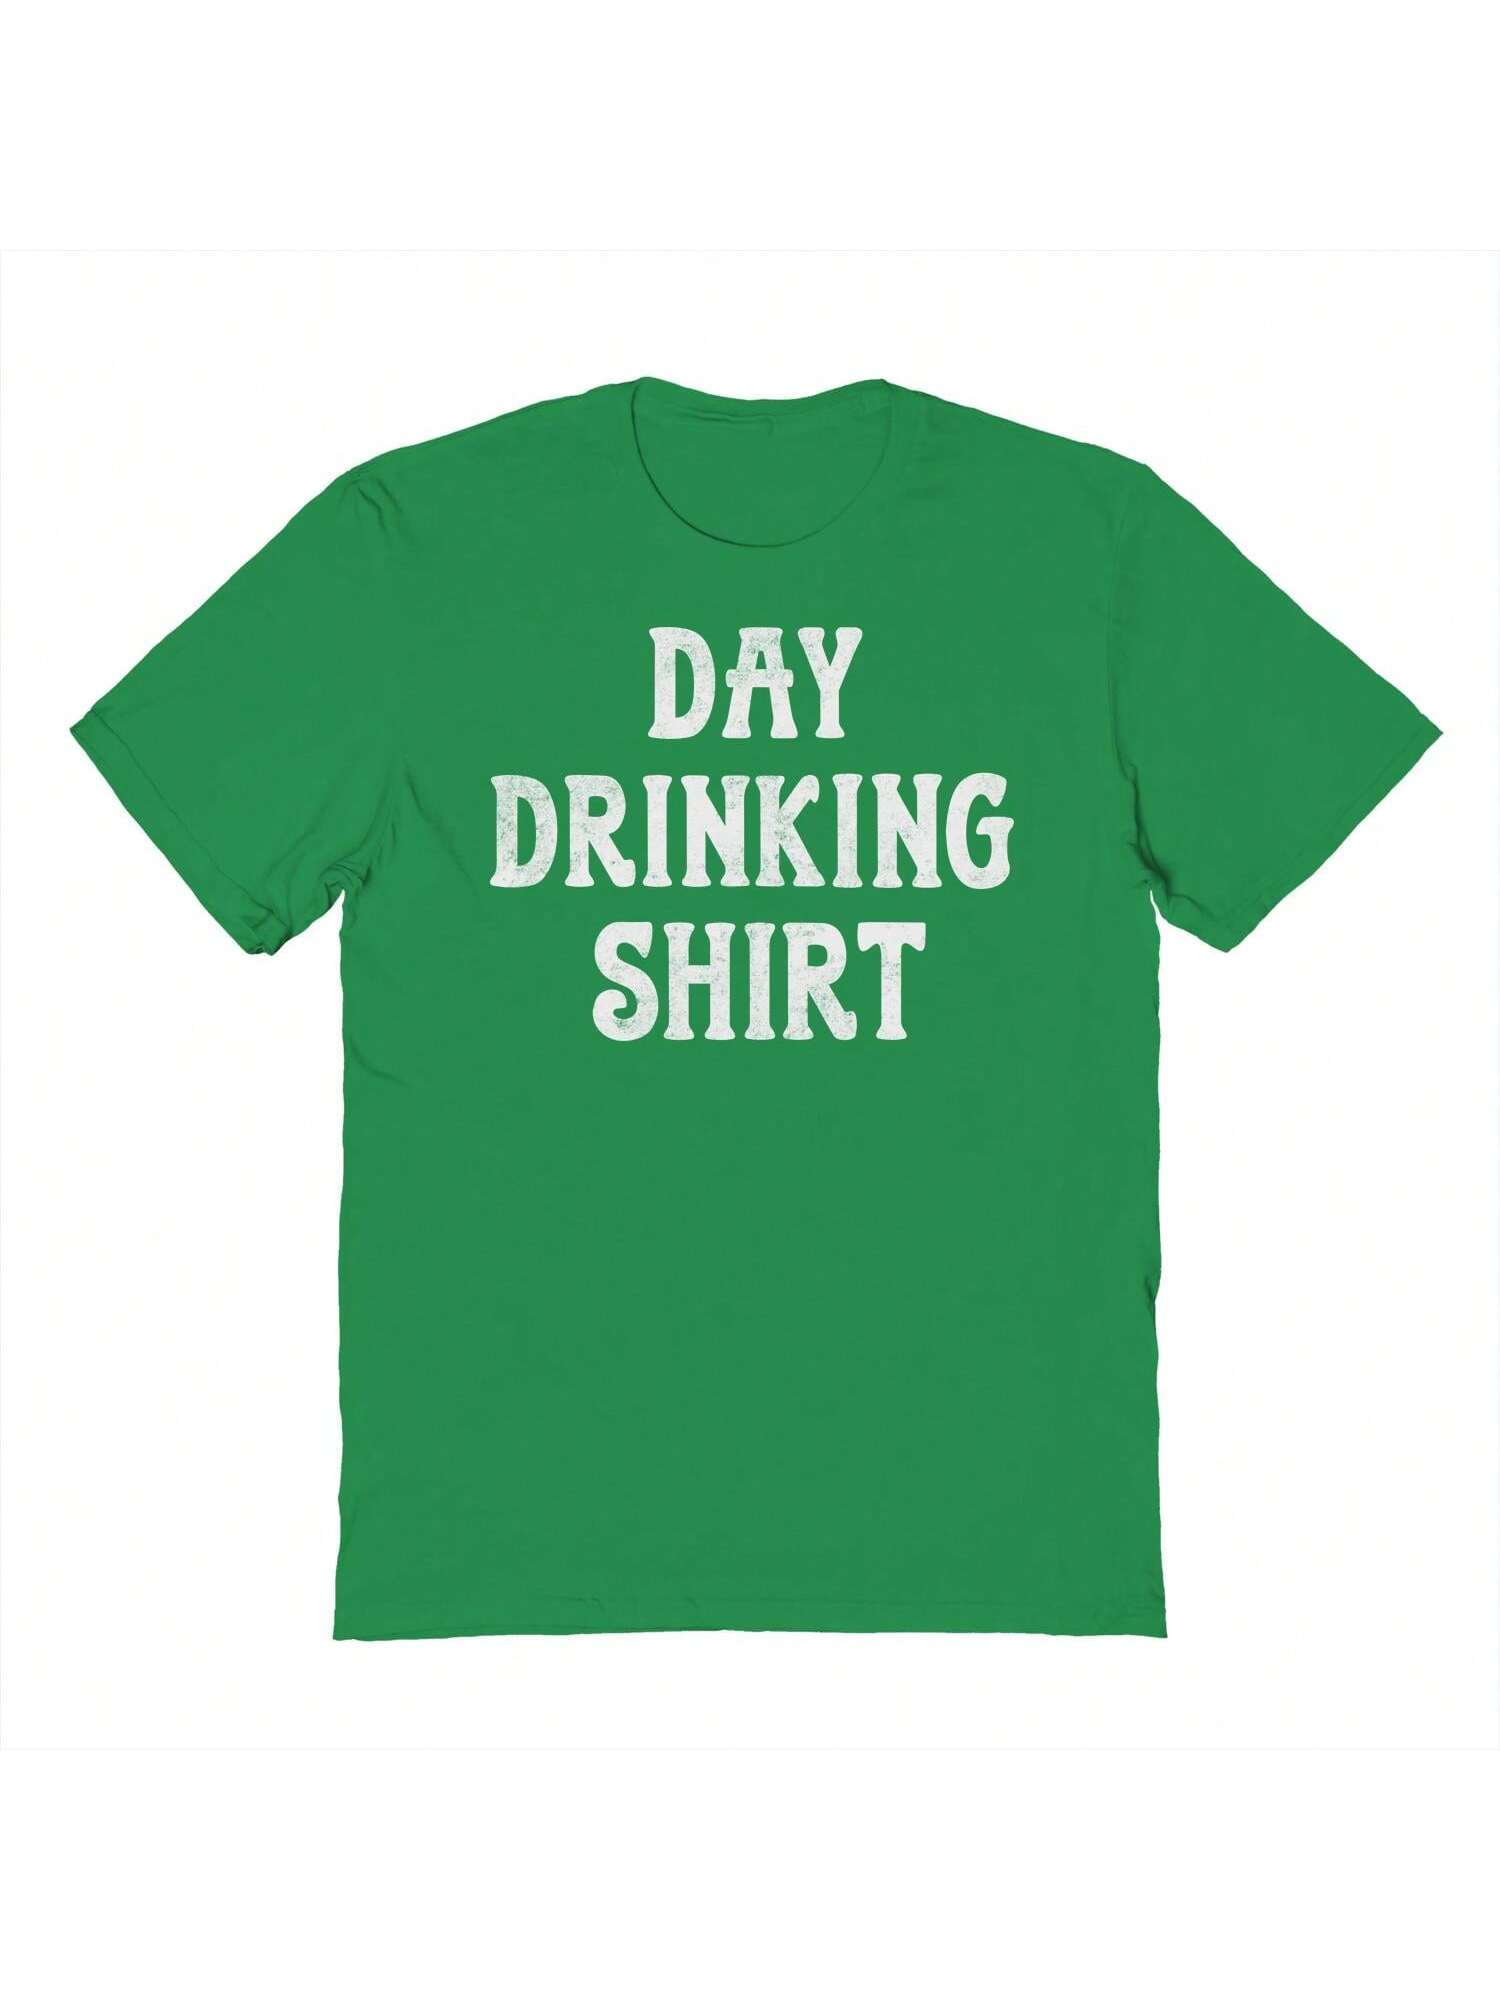 Социальная коллективная дневная рубашка для питья с рисунком газона, зеленый